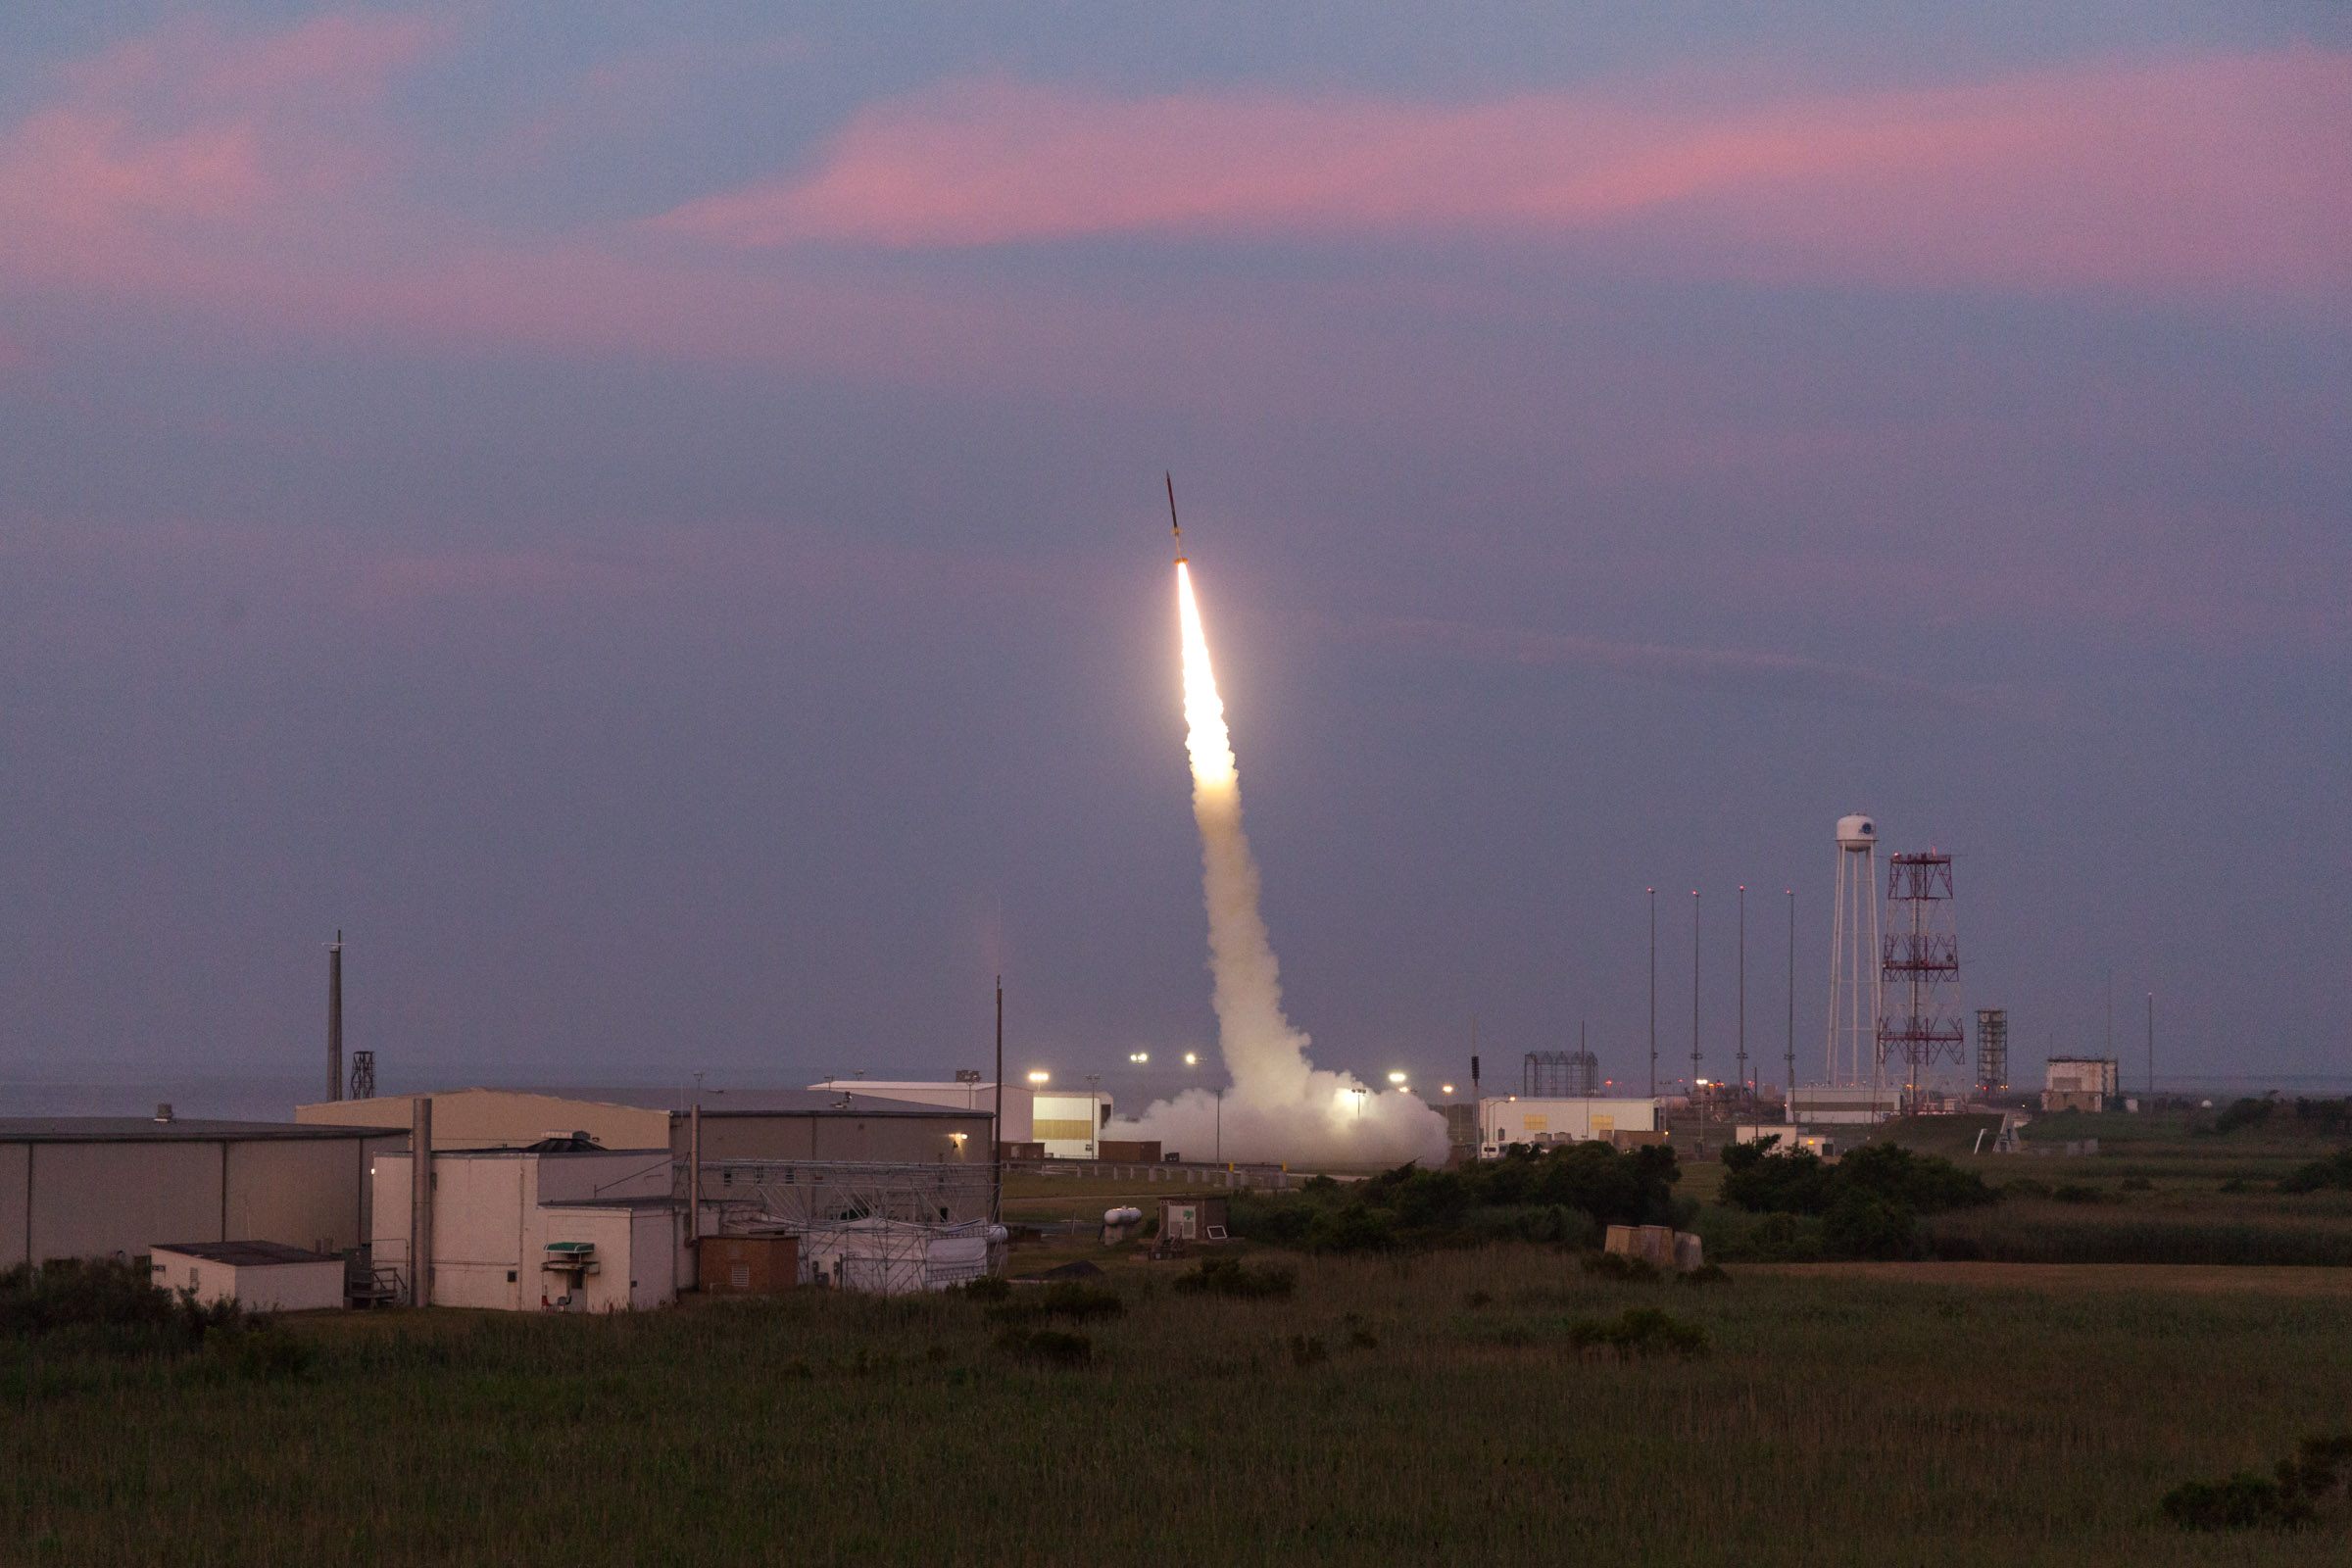 NASA Wallops Launch